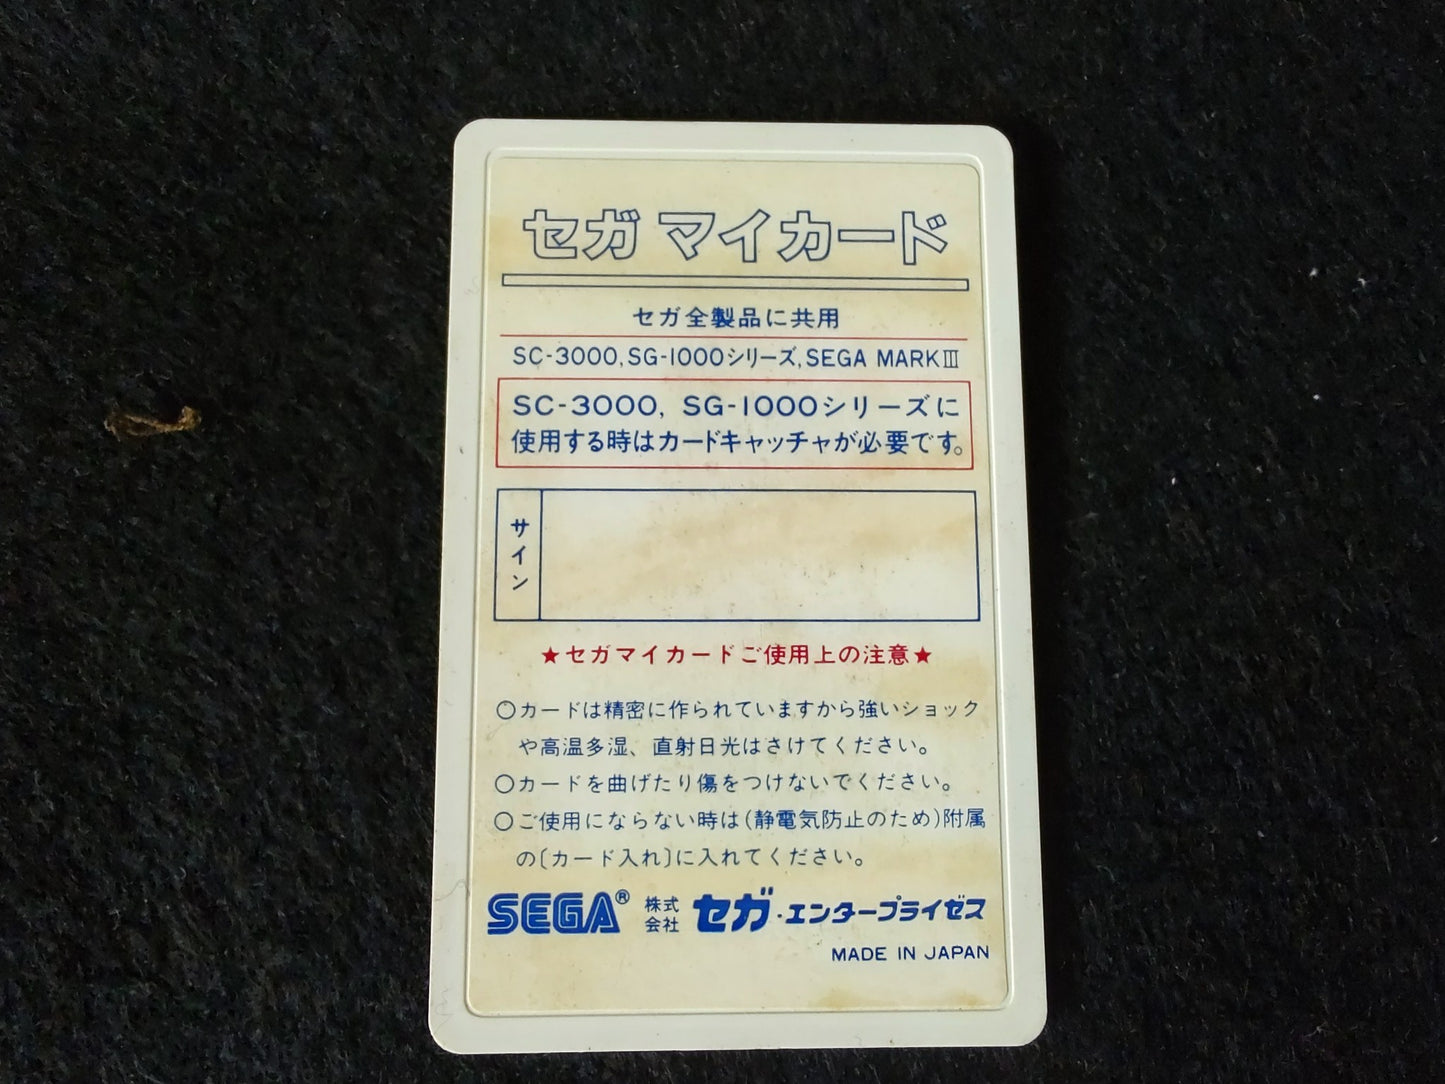 Dragon Wang My card SEGA Master system /Mark3 w/Manual and Box, Working-f0826-